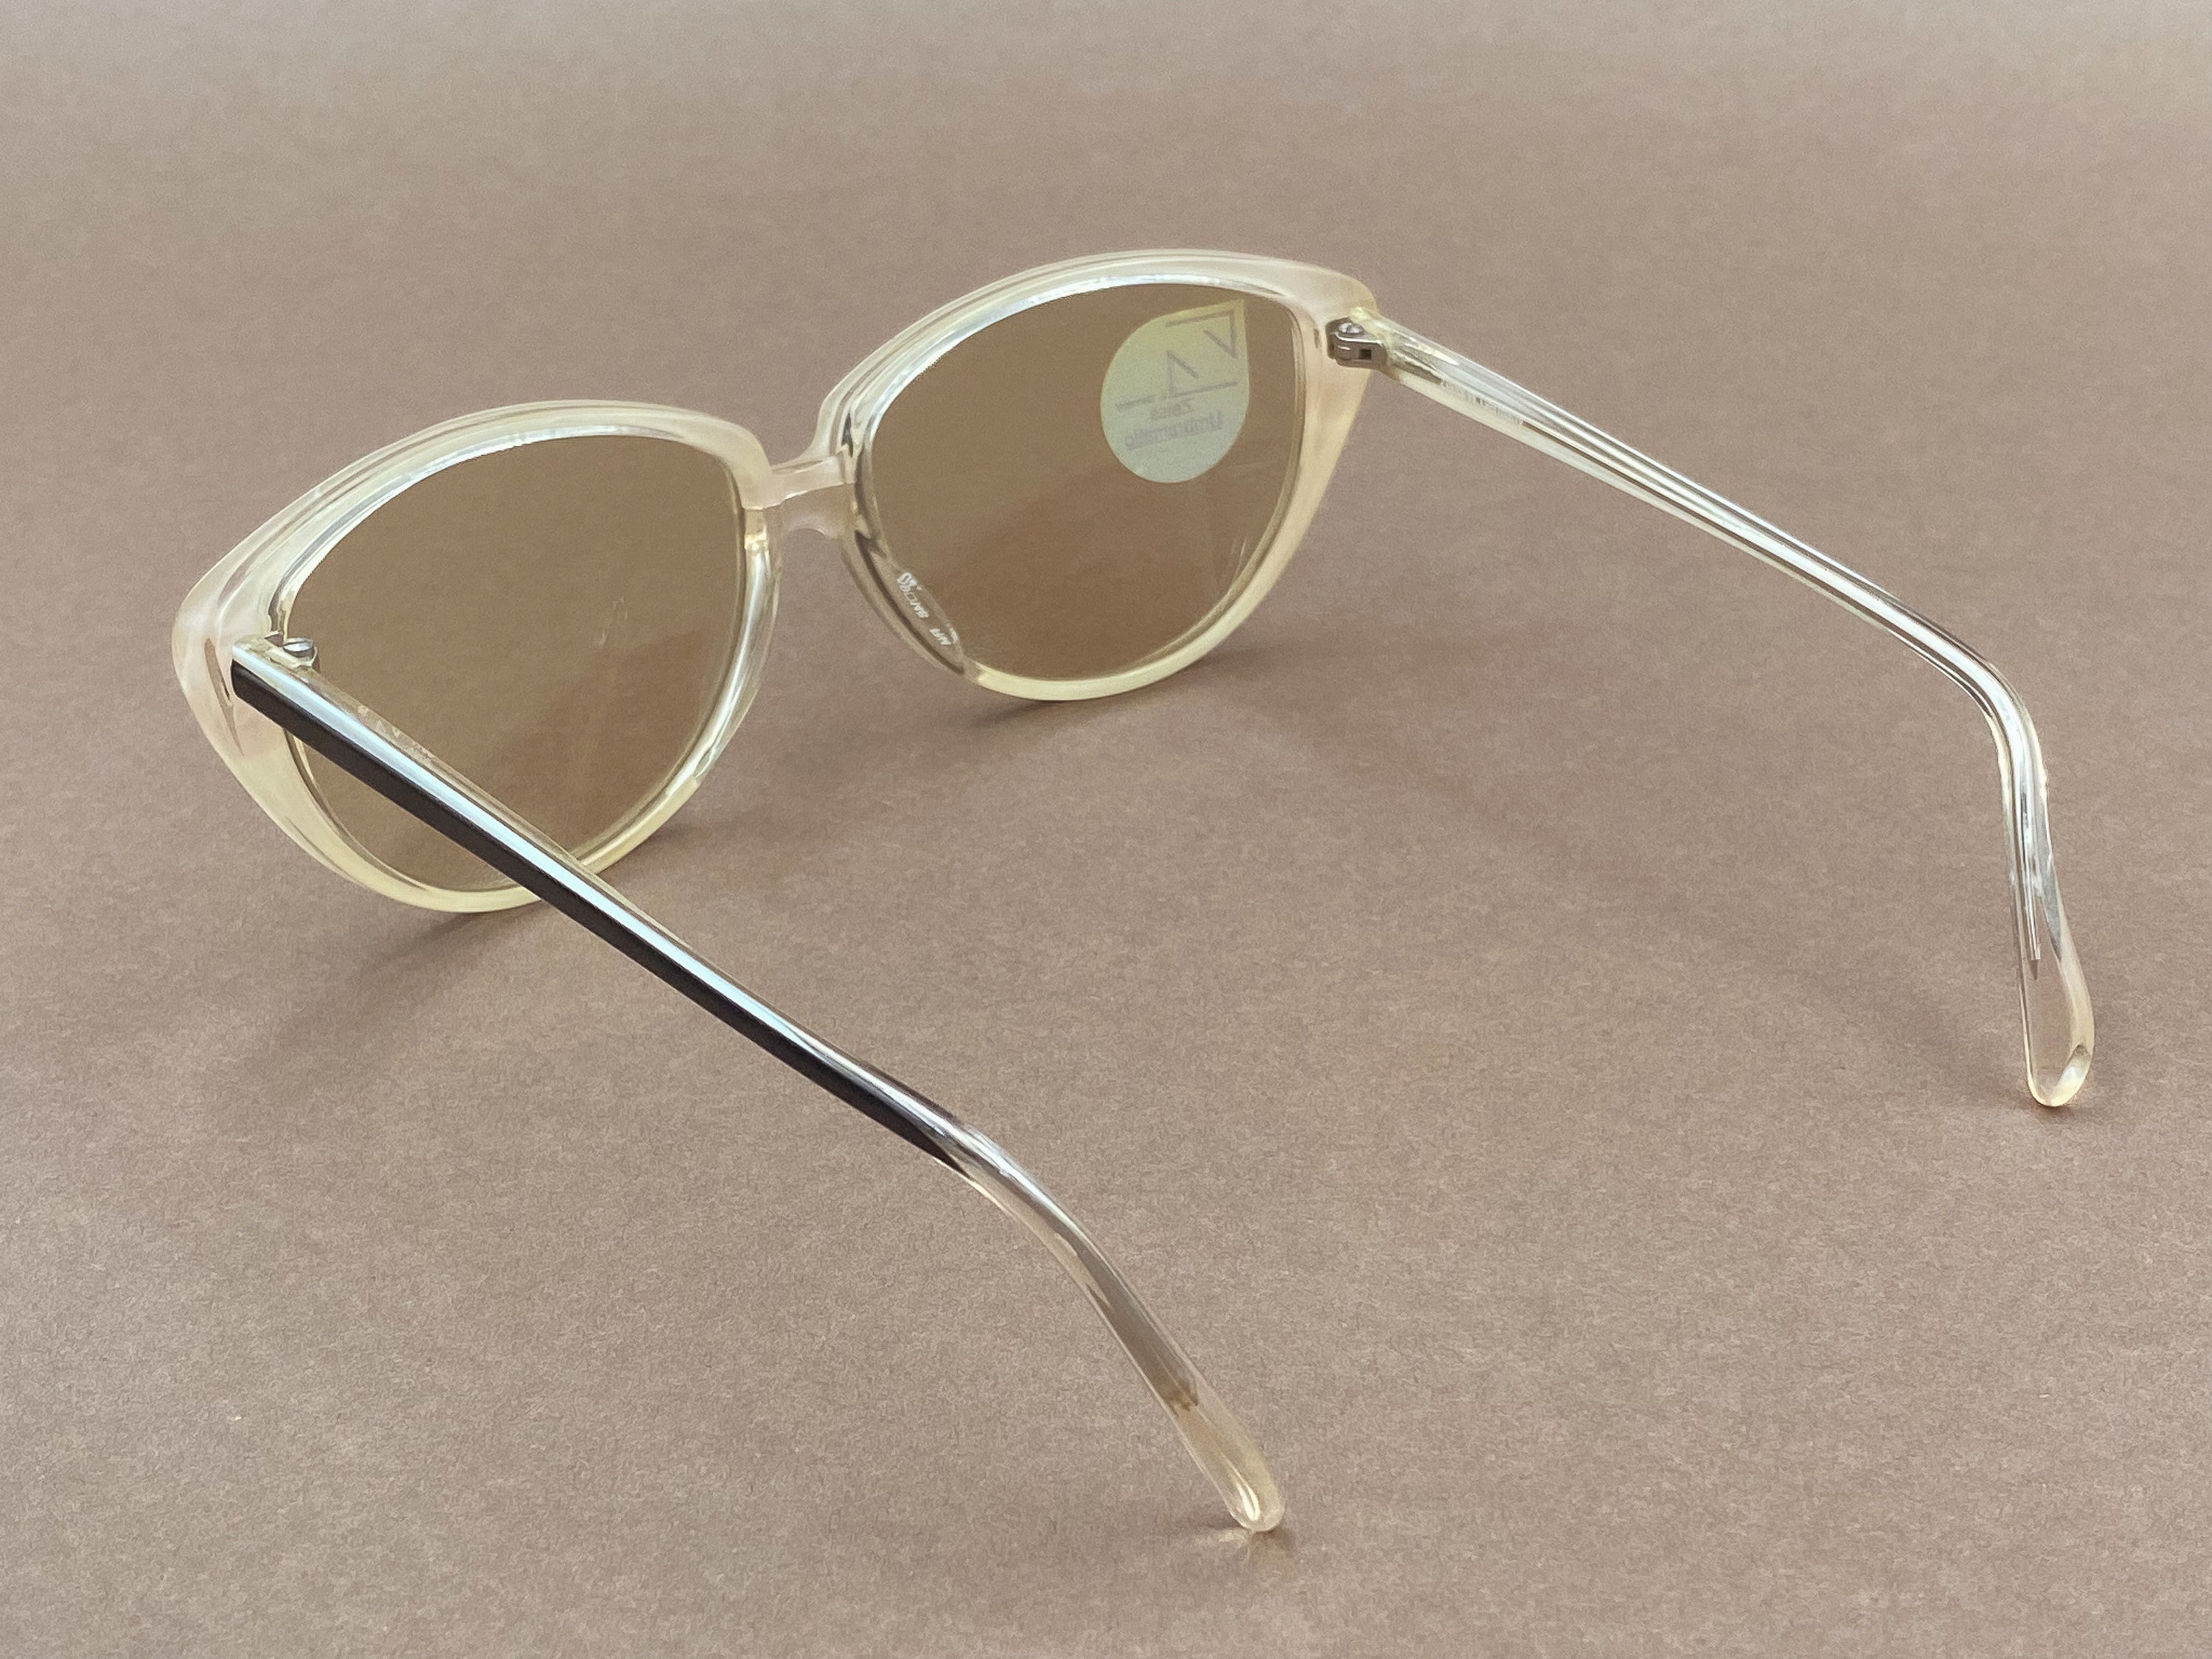 Zeiss 8317 Umbramatic ladies sunglasses